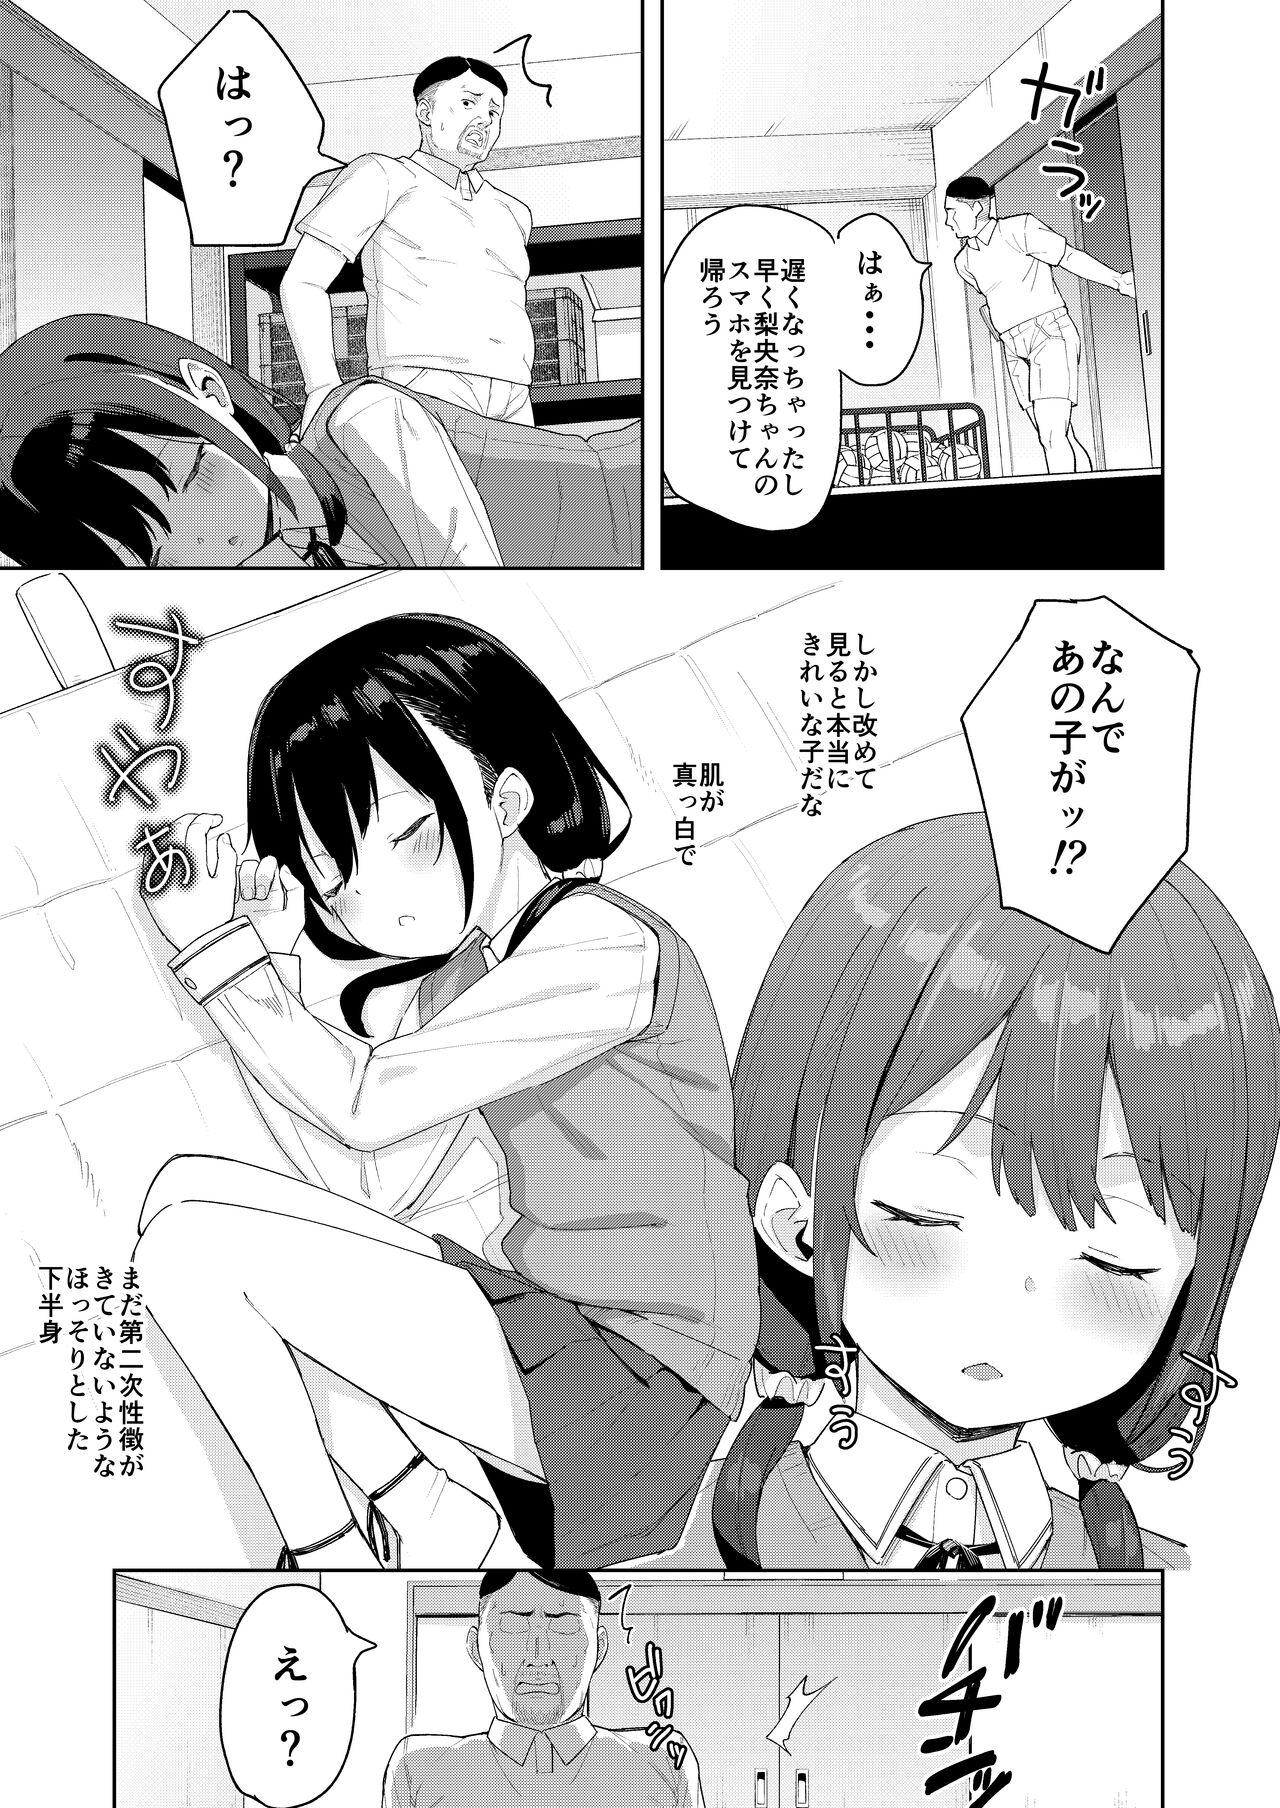 Lolicon Musume no Tomodachi no Mesugaki ni Okasaremashita 2 - Original 18 Year Old - Page 6